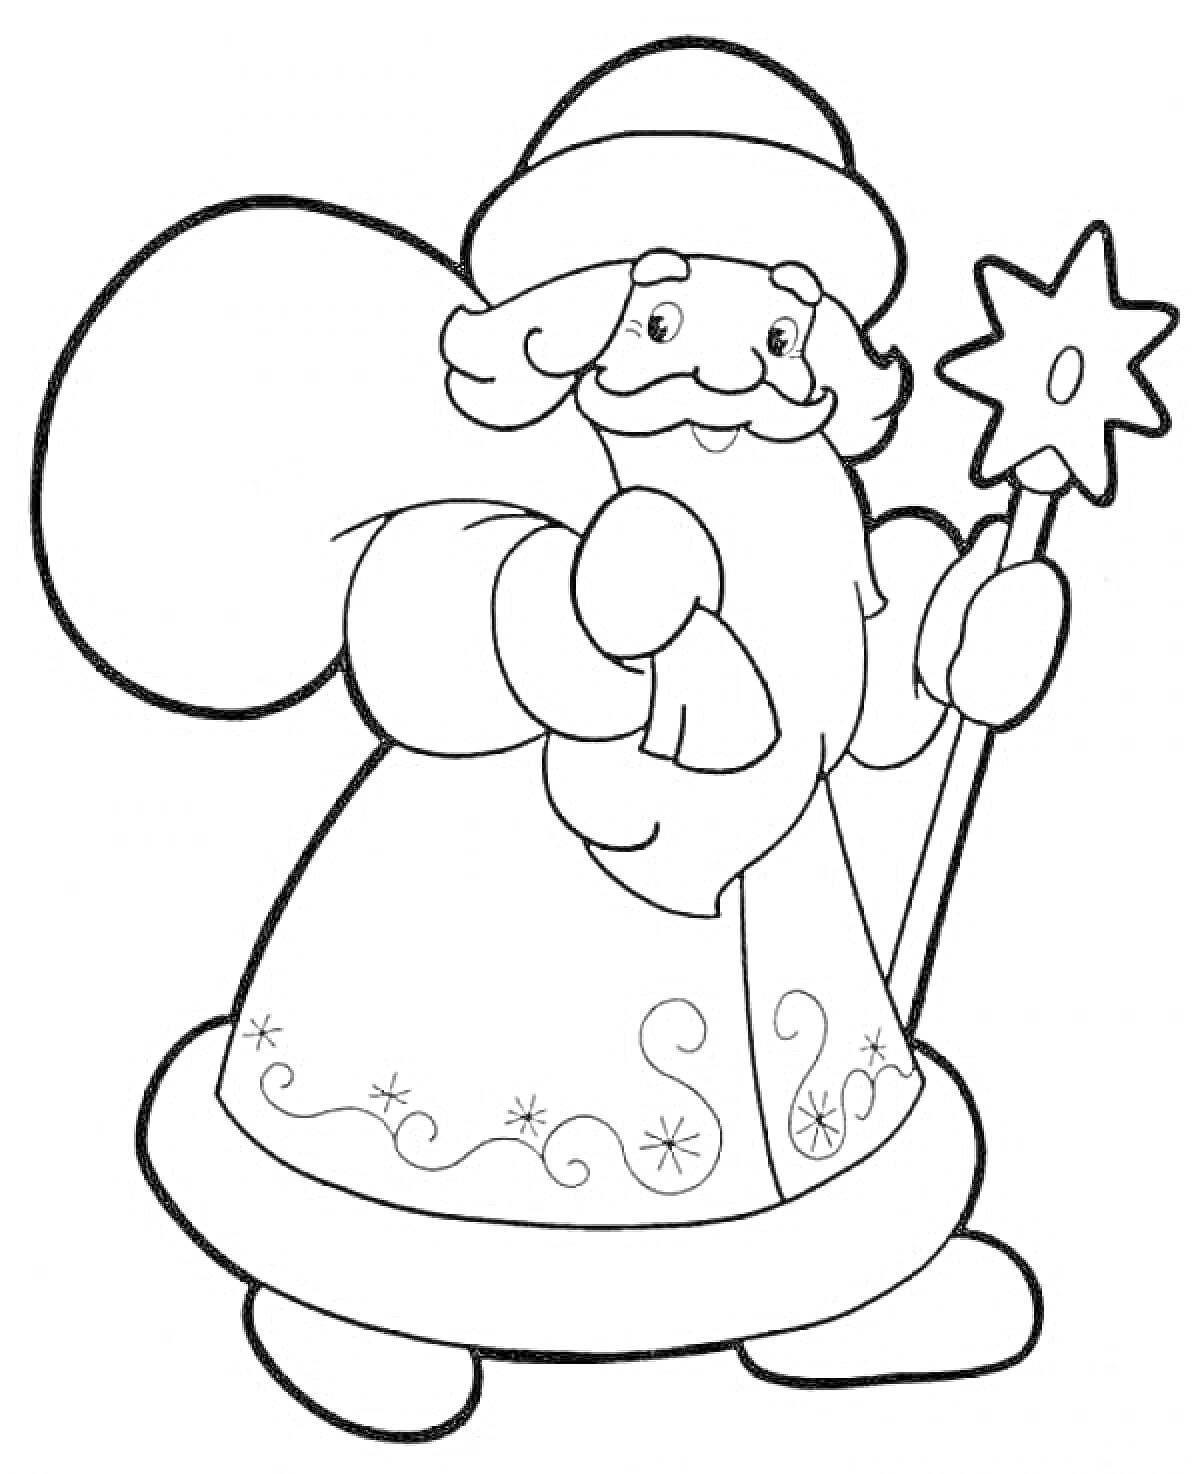 Раскраска Дед Мороз с посохом в руке и украшенной шубой